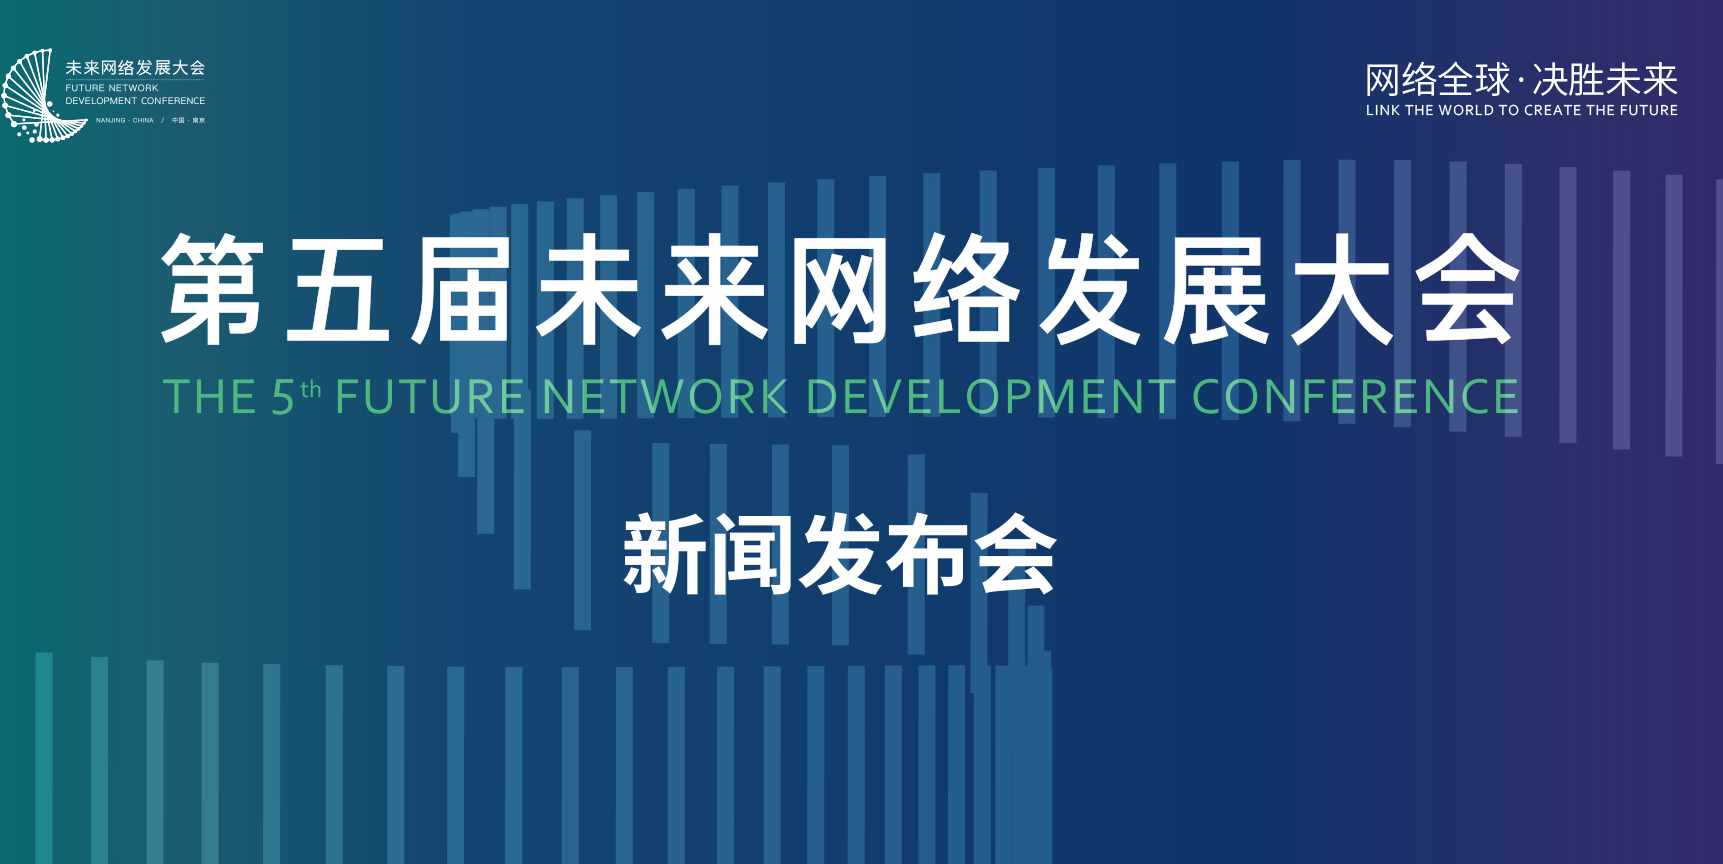 第五届未来网络发展大会即将开幕  科技创新驱动产业未来!